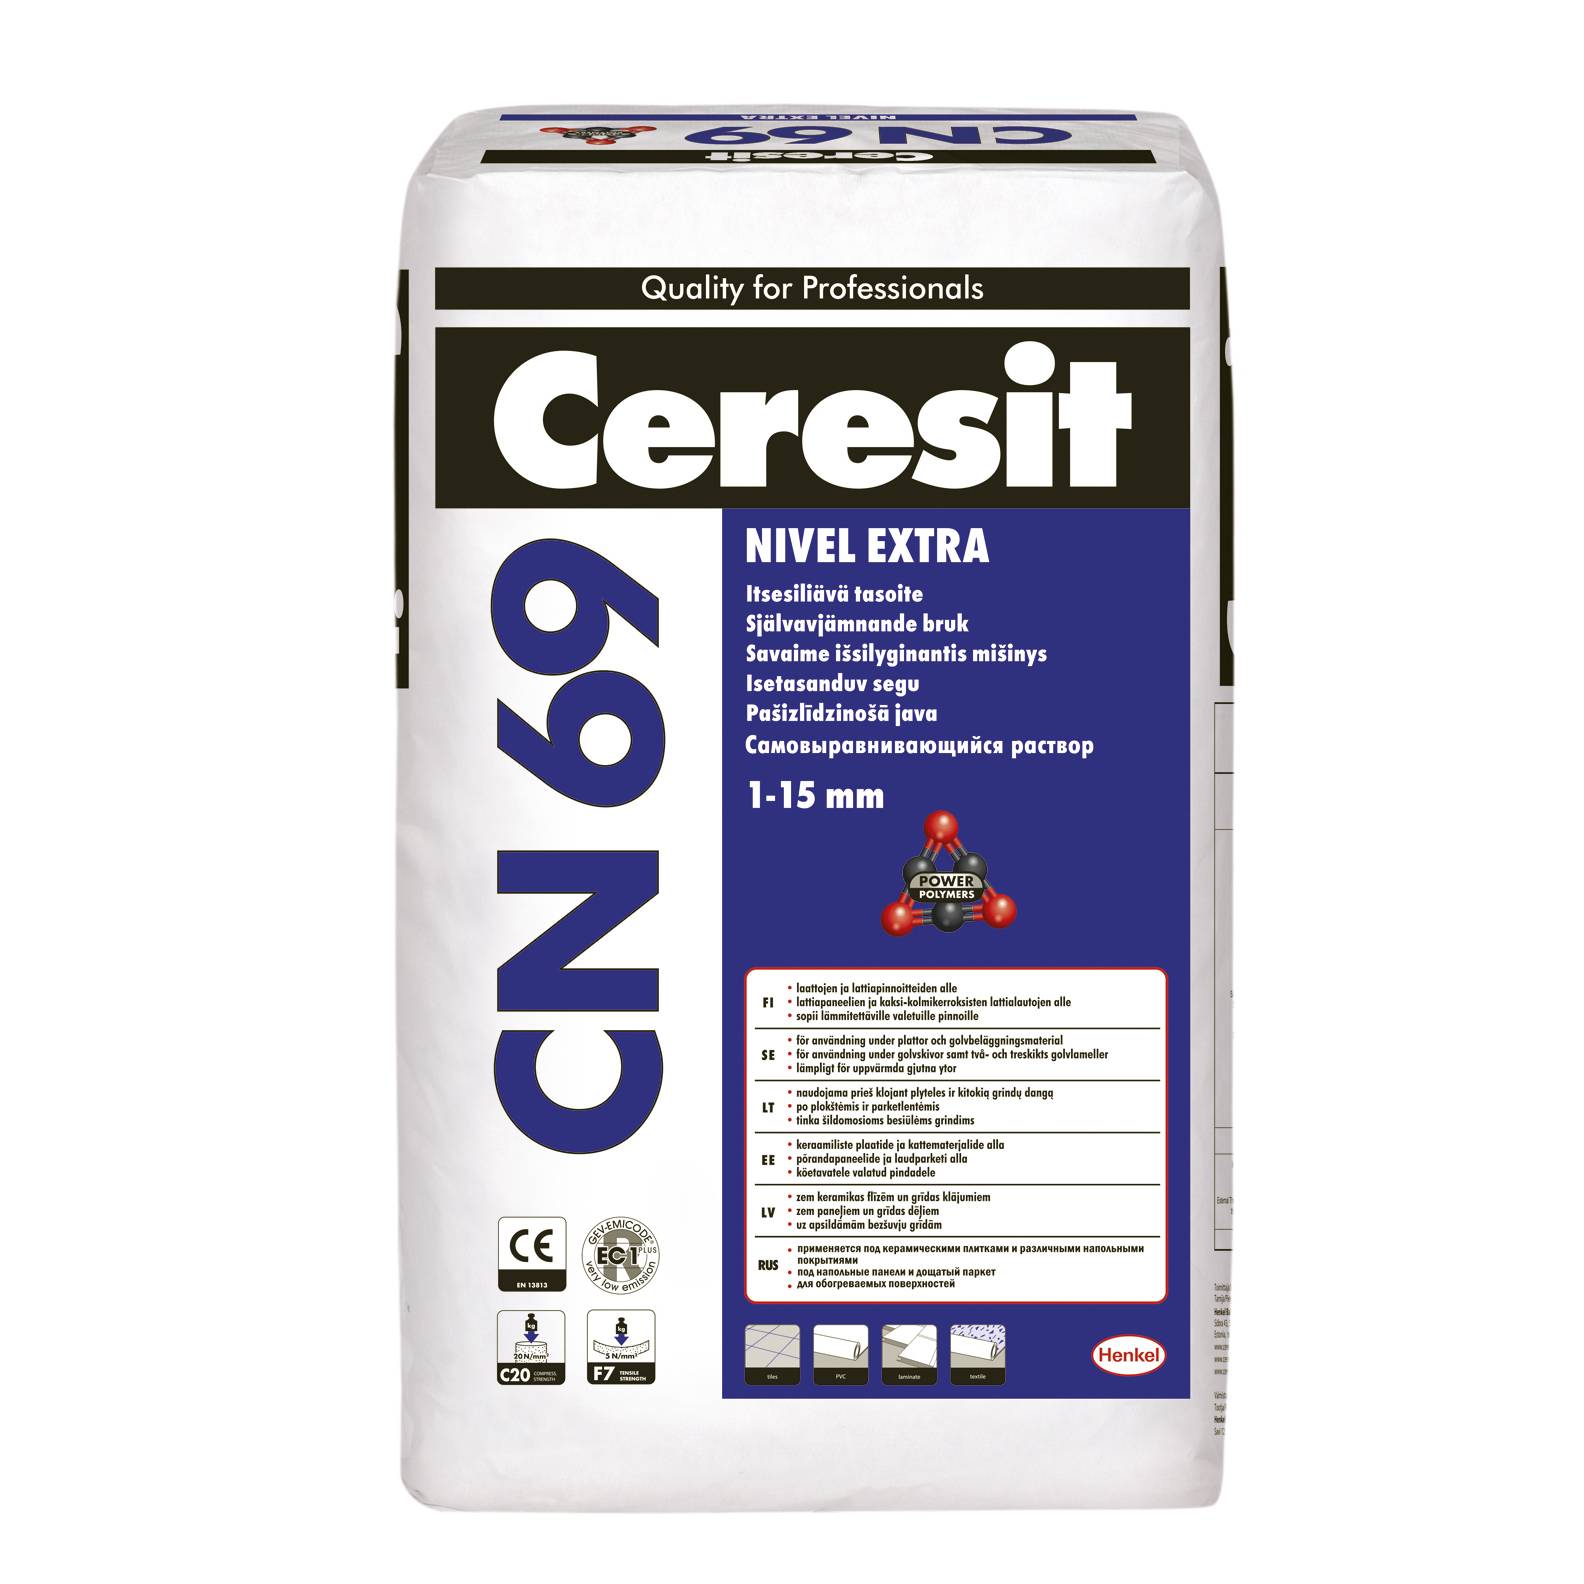 Затирка церезит (ceresit) для швов плитки: цветовая гамма, палитра характеристик фуг ceresit, эпоксидная, влагостойкая, сколько сохнет, инструкция по применению